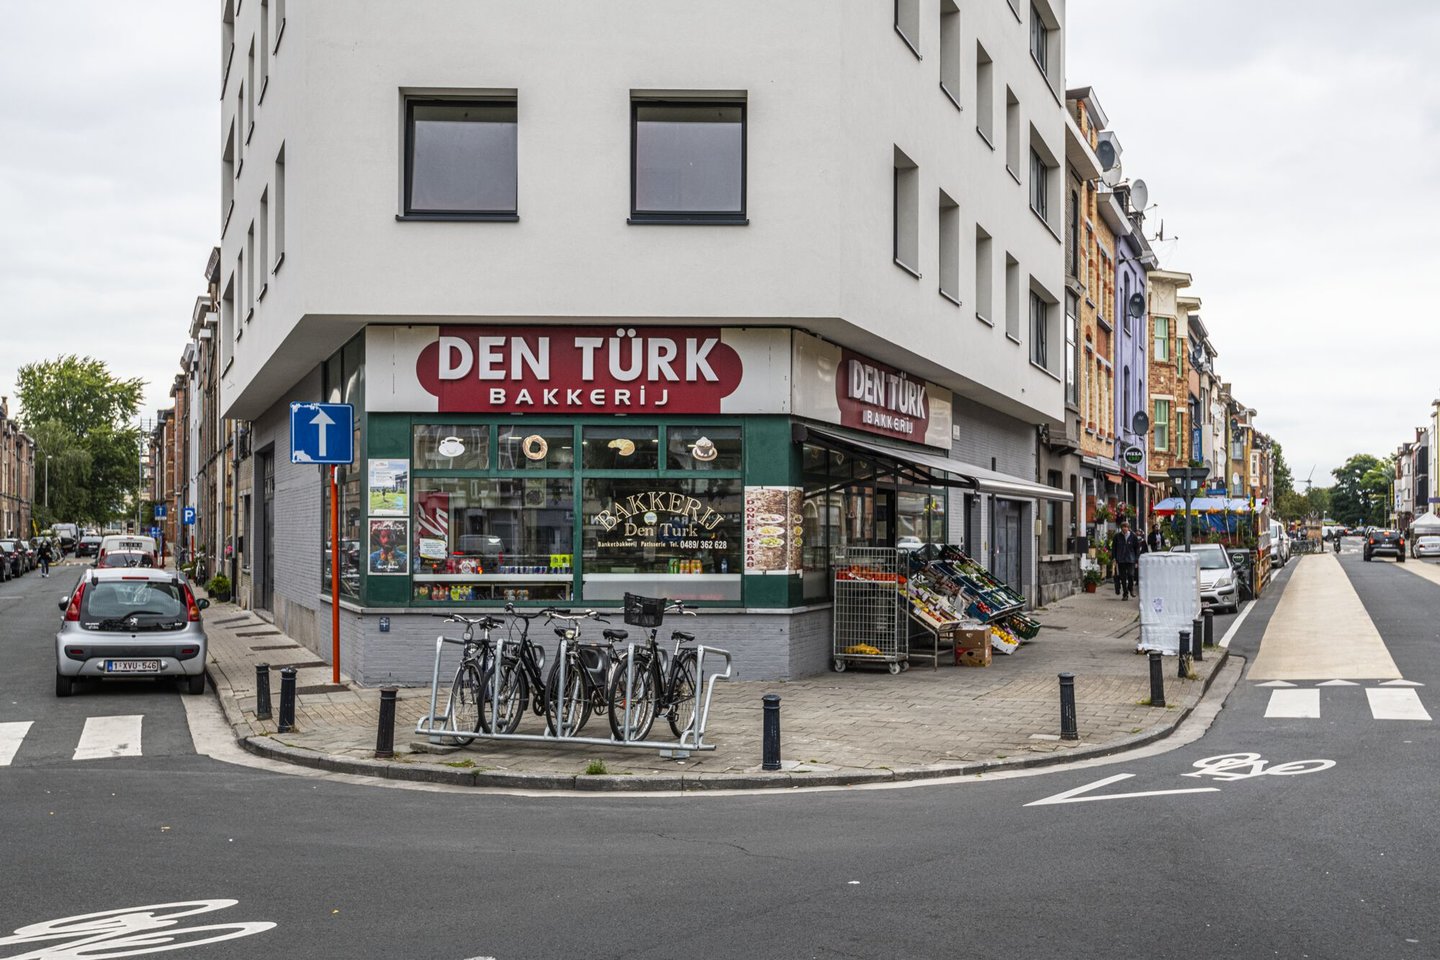 Etalage van bakkerij Den Türk in Gent